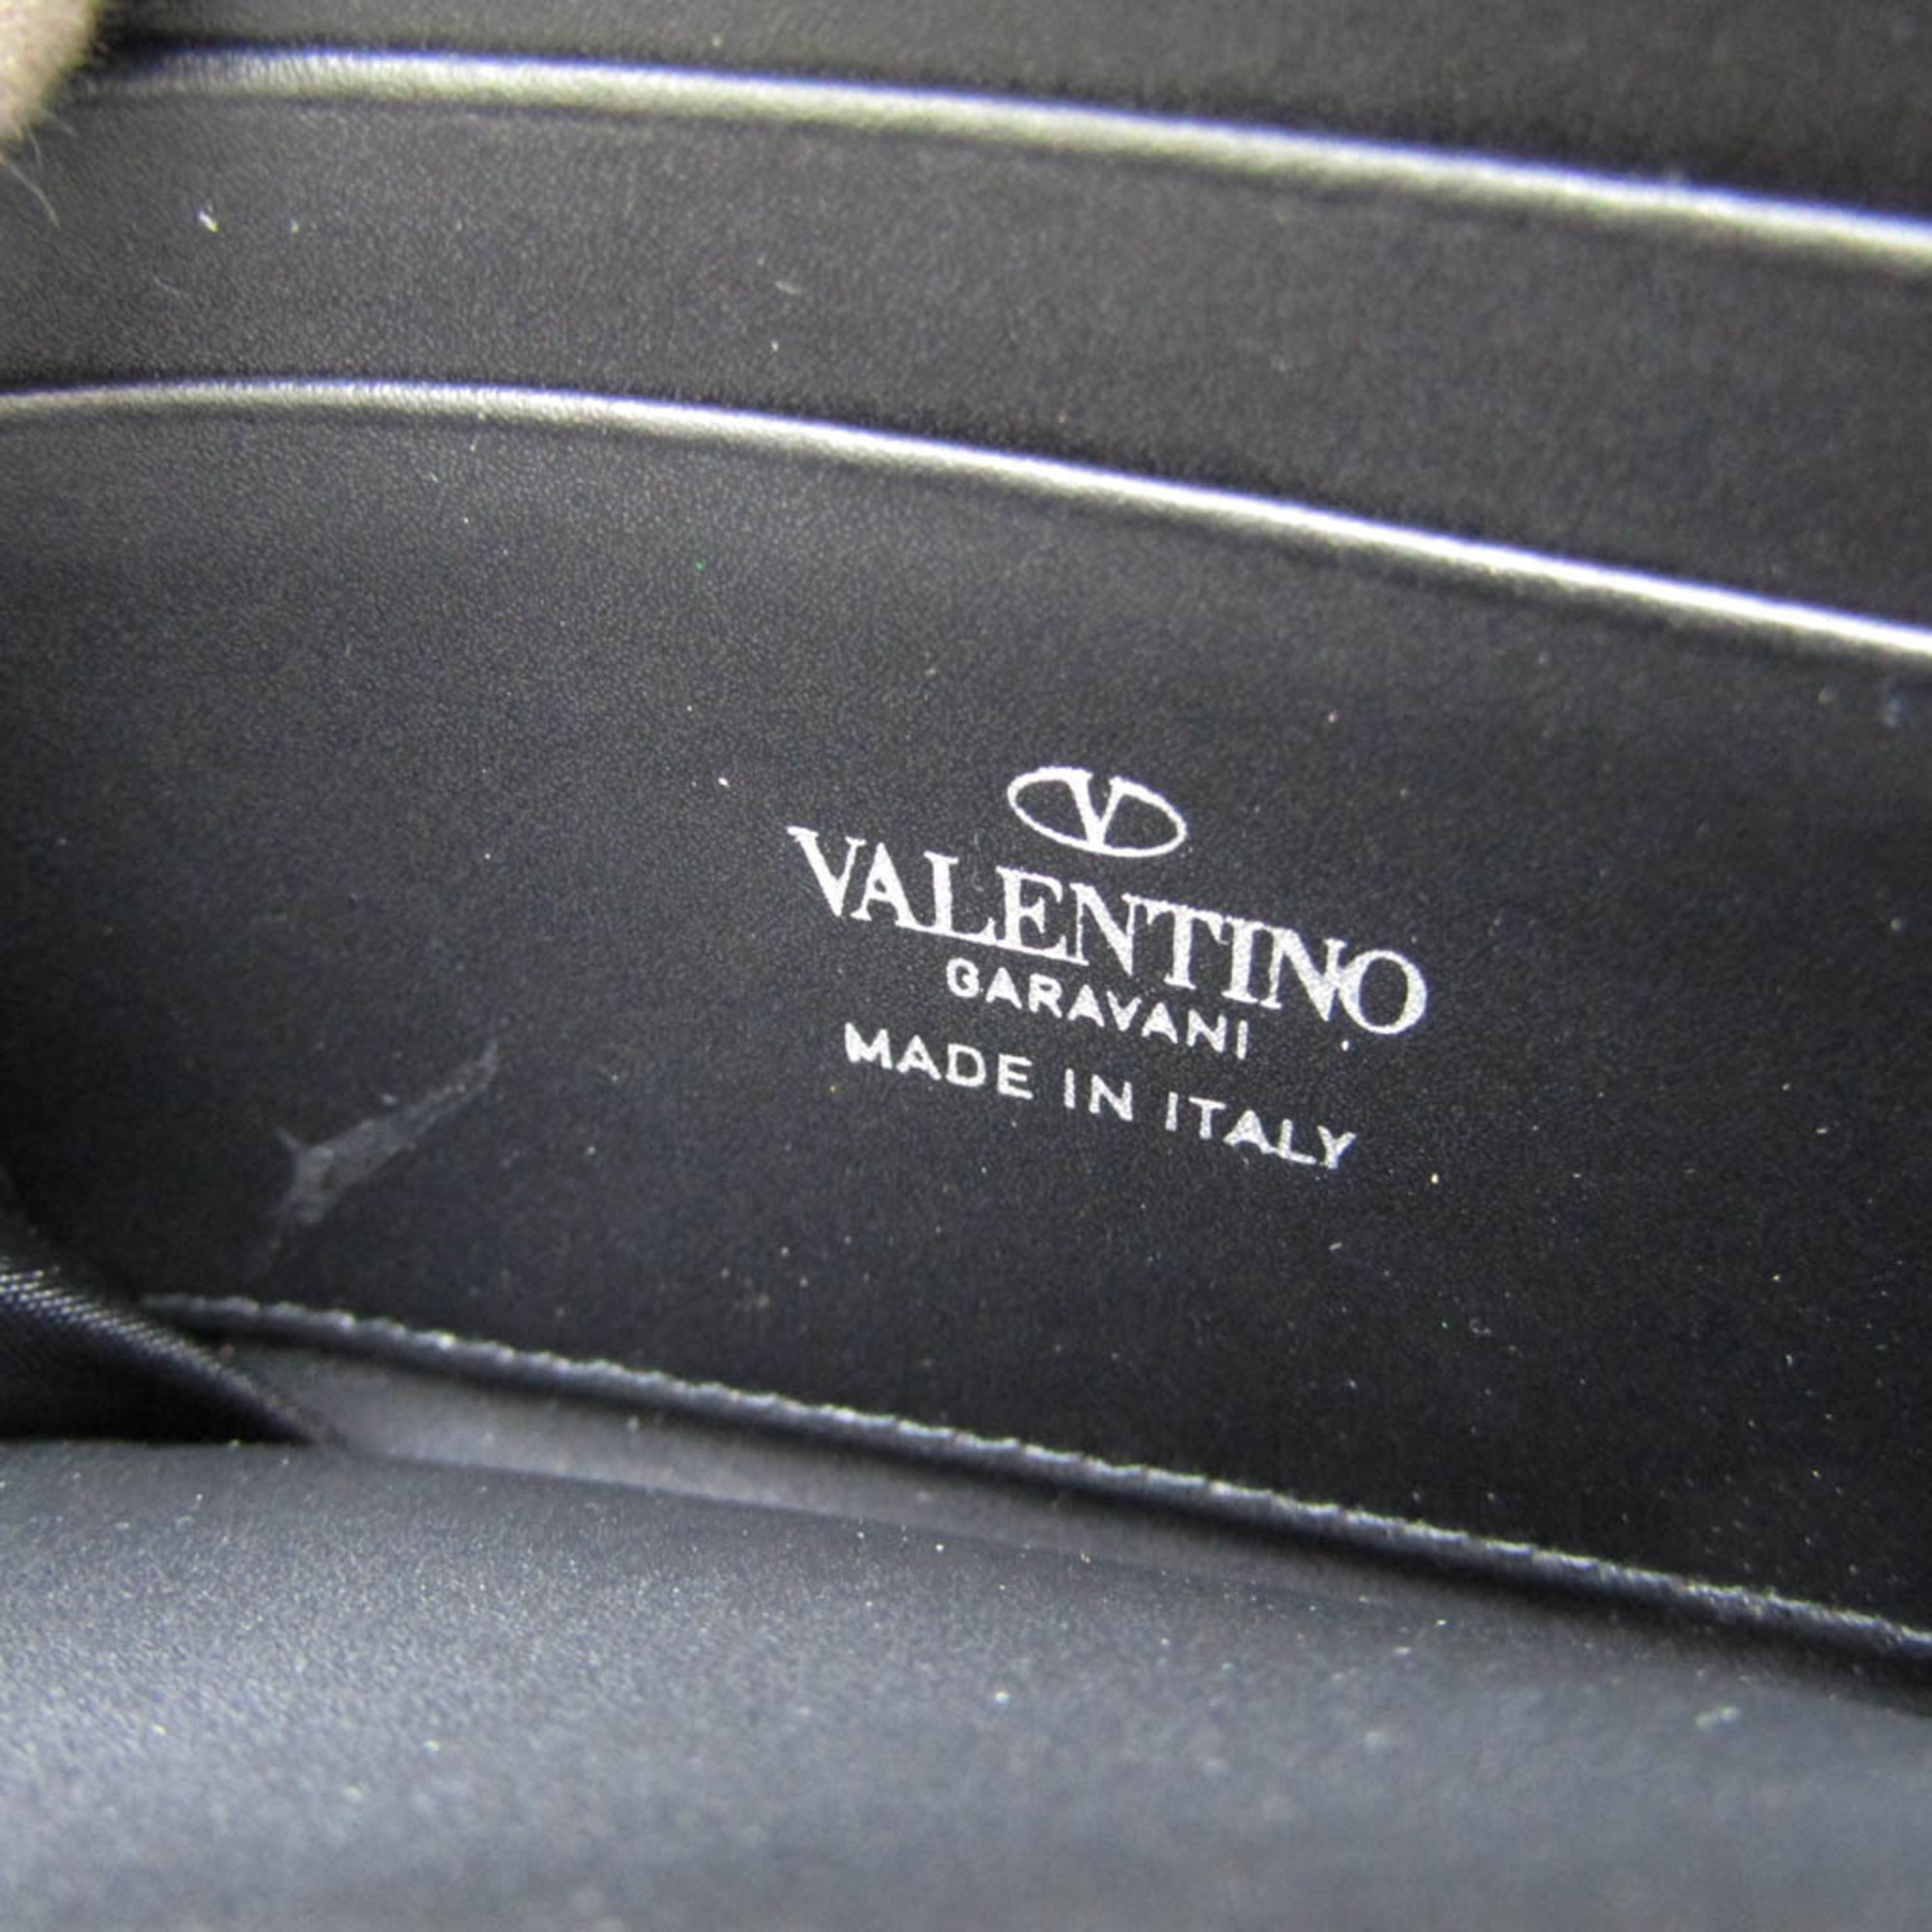 ヴァレンティノ・ガラヴァーニ(Valentino Garavani) ネックストラップ付き UY2P0R48LVN レザー カードケース ブラック,ホワイト